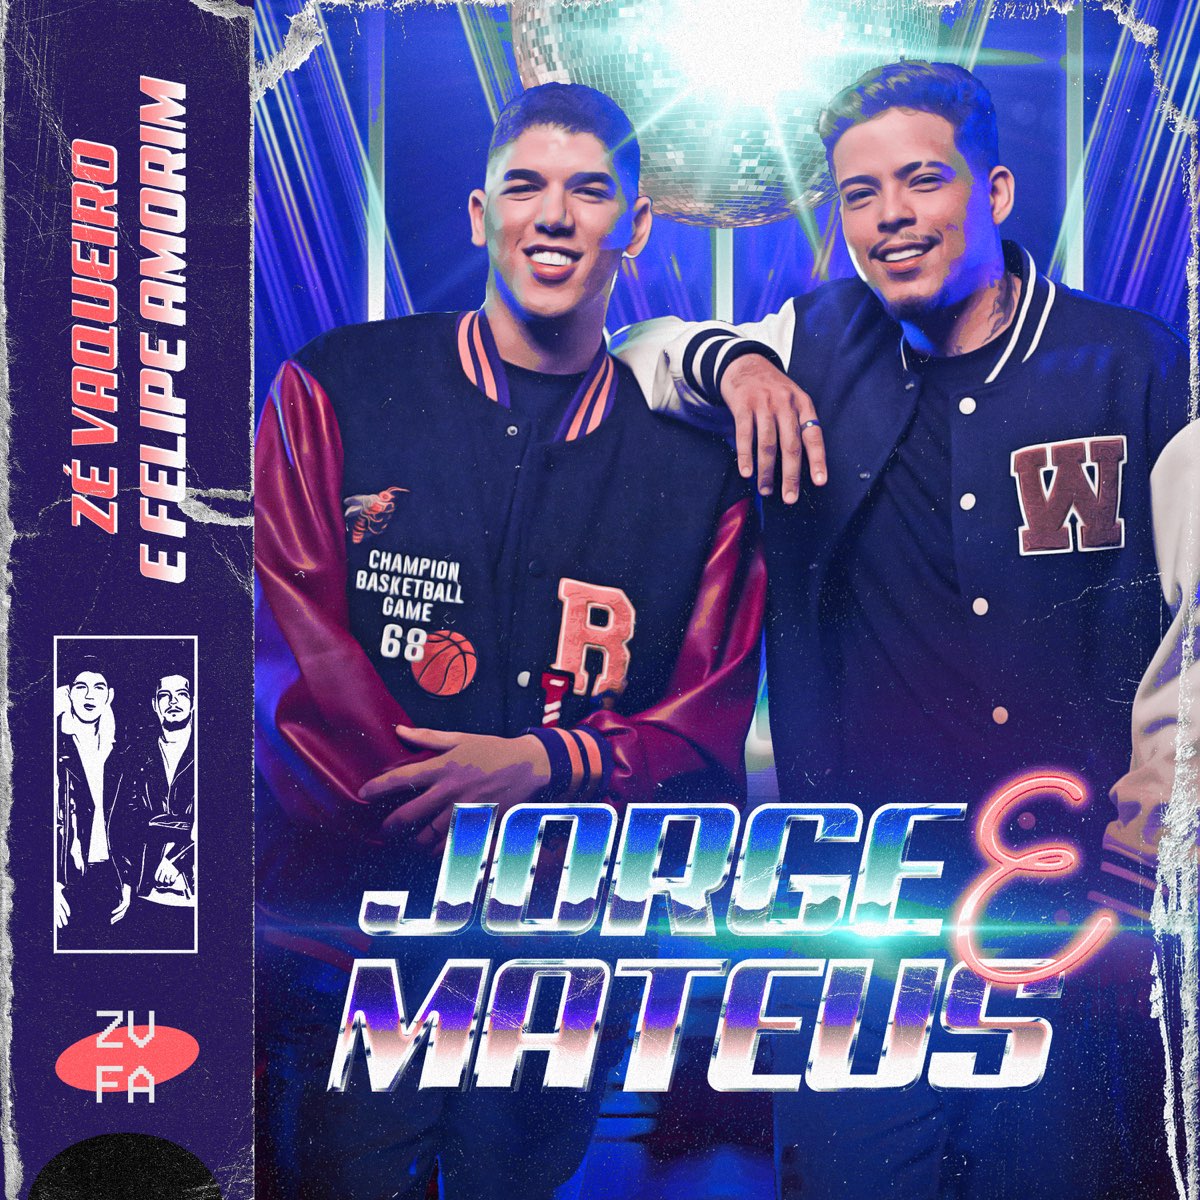 Zé Vaqueiro & Felipe Amorim — Jorge &amp; Mateus cover artwork